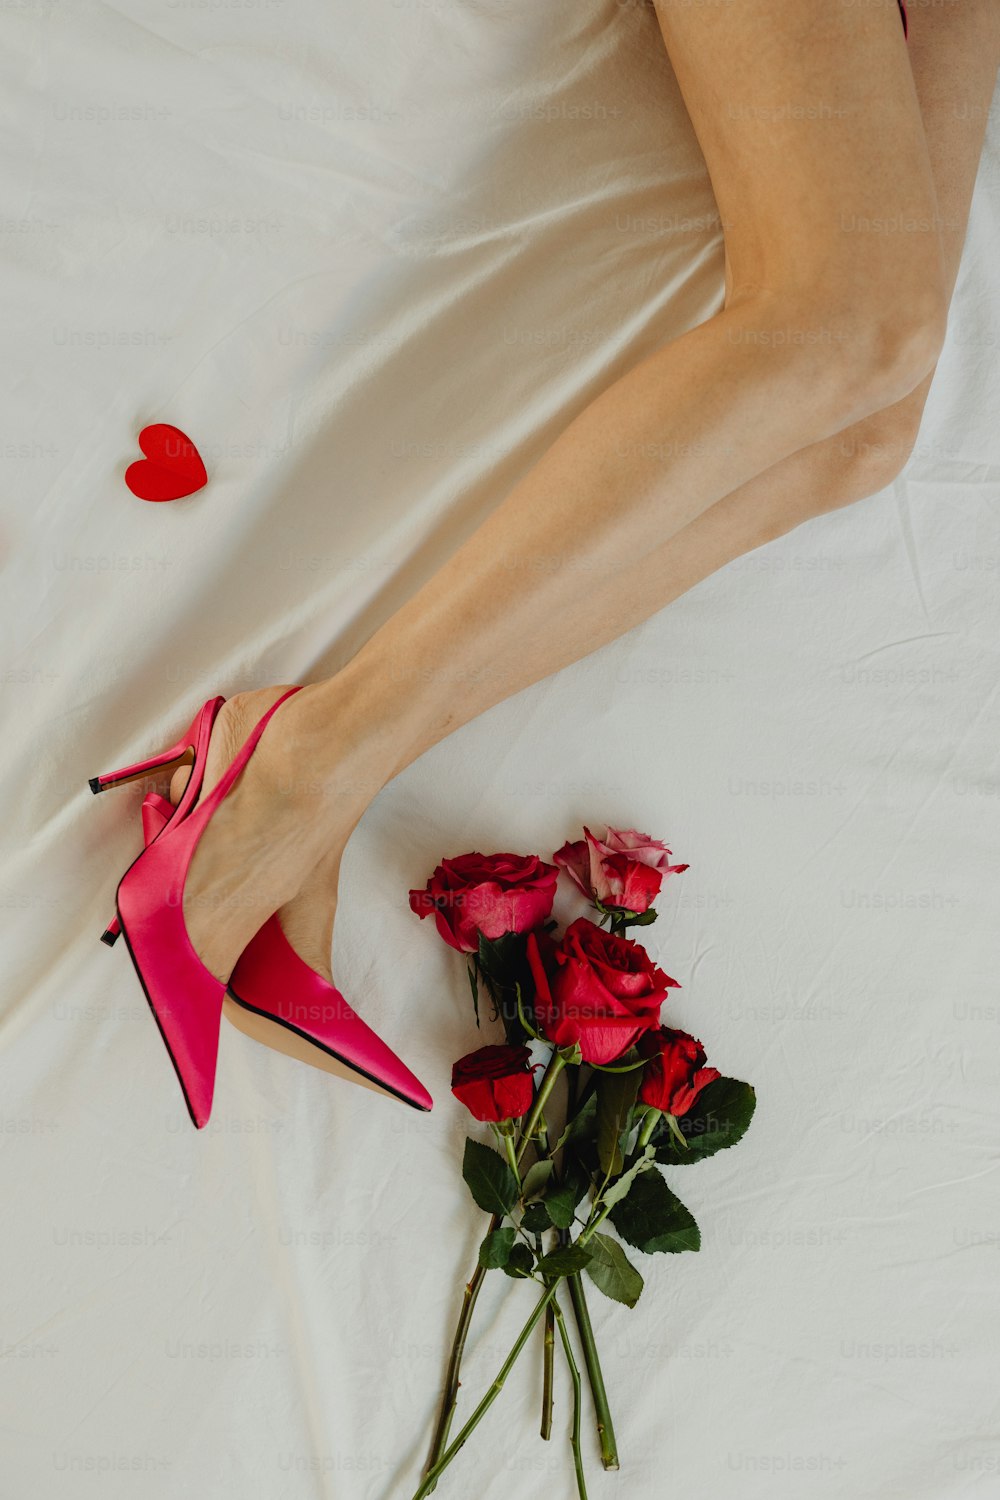 Eine Frau liegt mit einem Rosenstrauß auf einem Bett